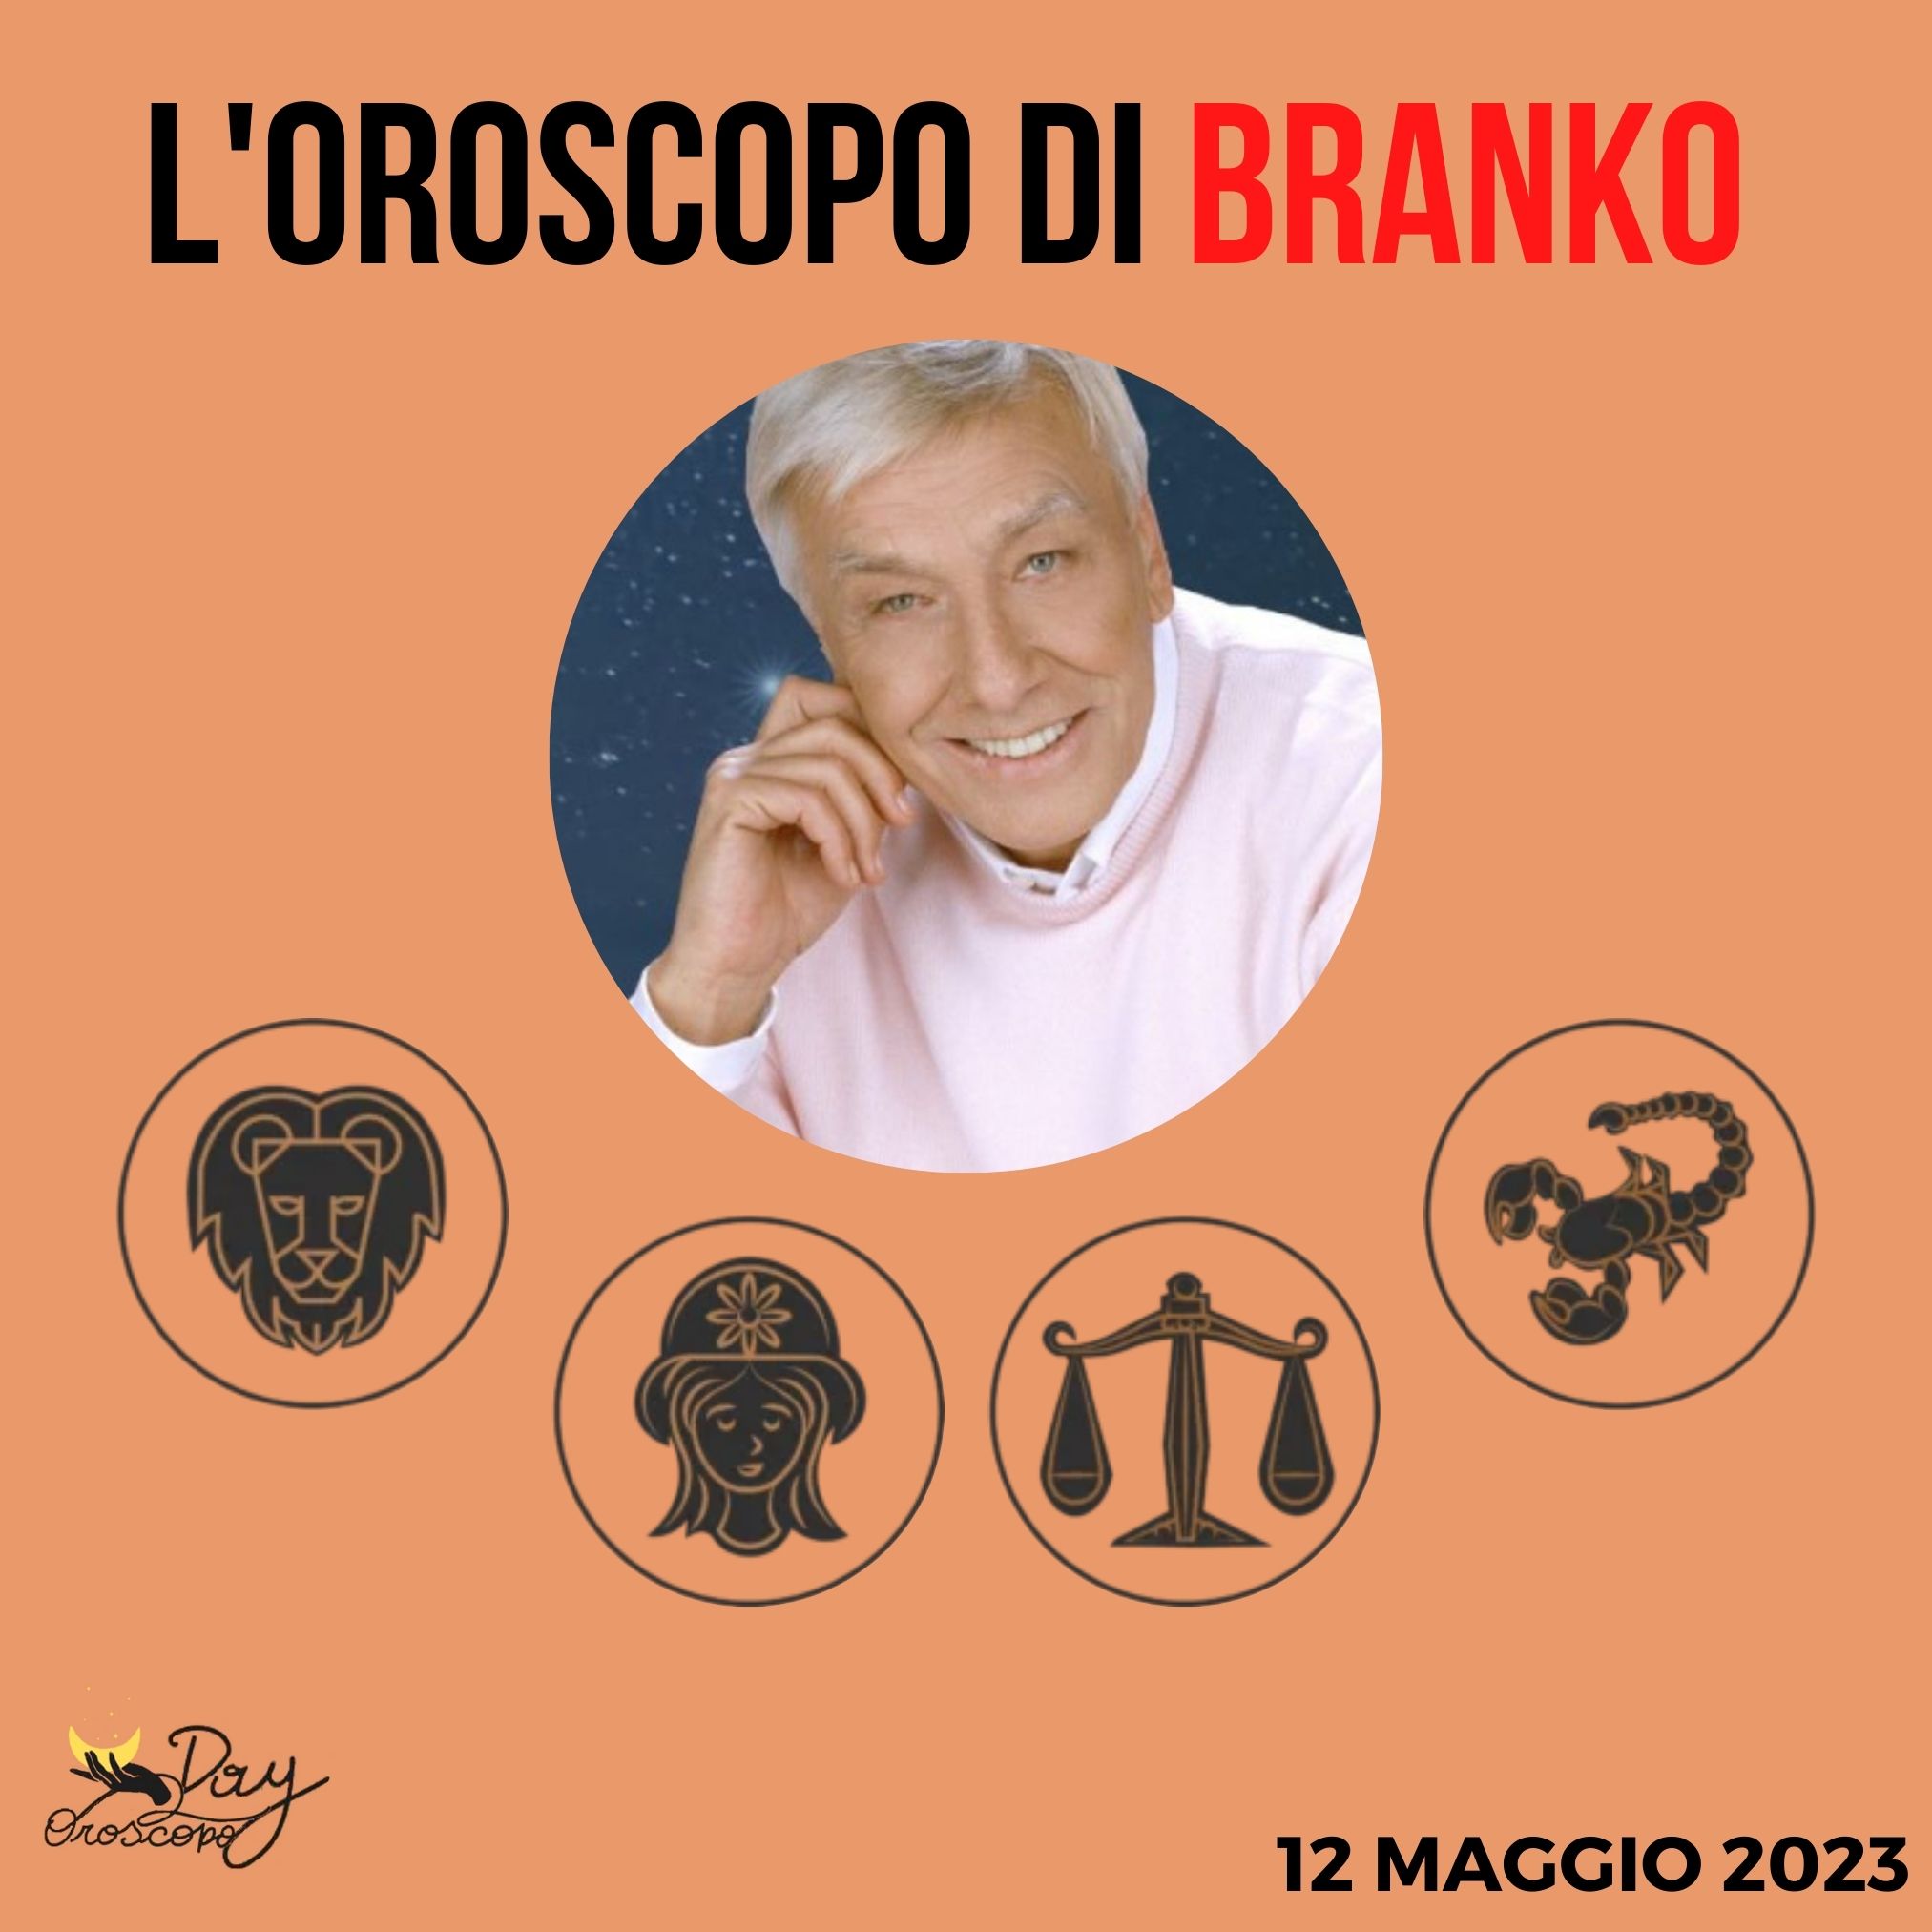 Oroscopo oggi domani Branko 12 maggio Leone Vergine Bilancia Scorpione